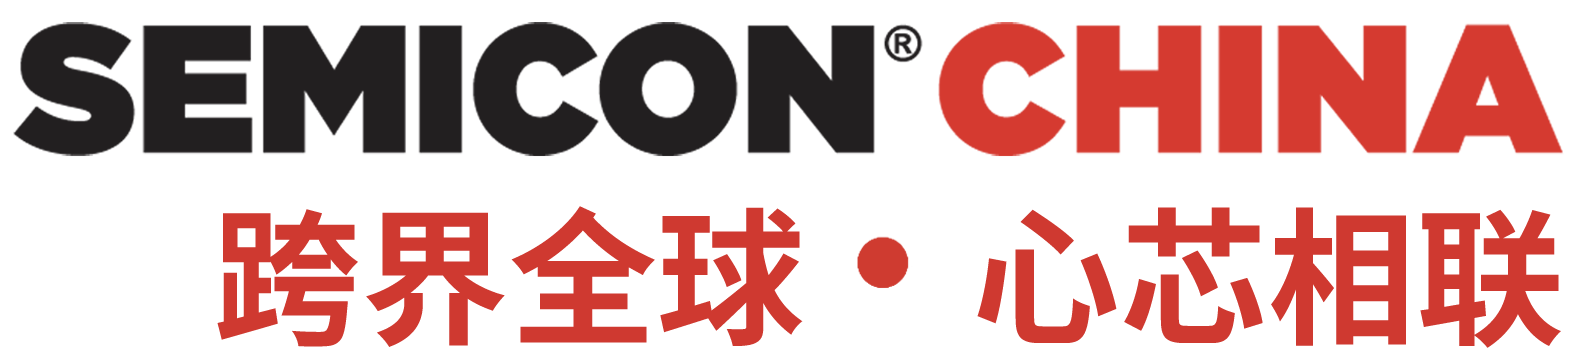 중국 상하이 마이크로일렉트로닉스/반도체 전문 박람회, 세미콘 차이나(SEMICON CHINA)